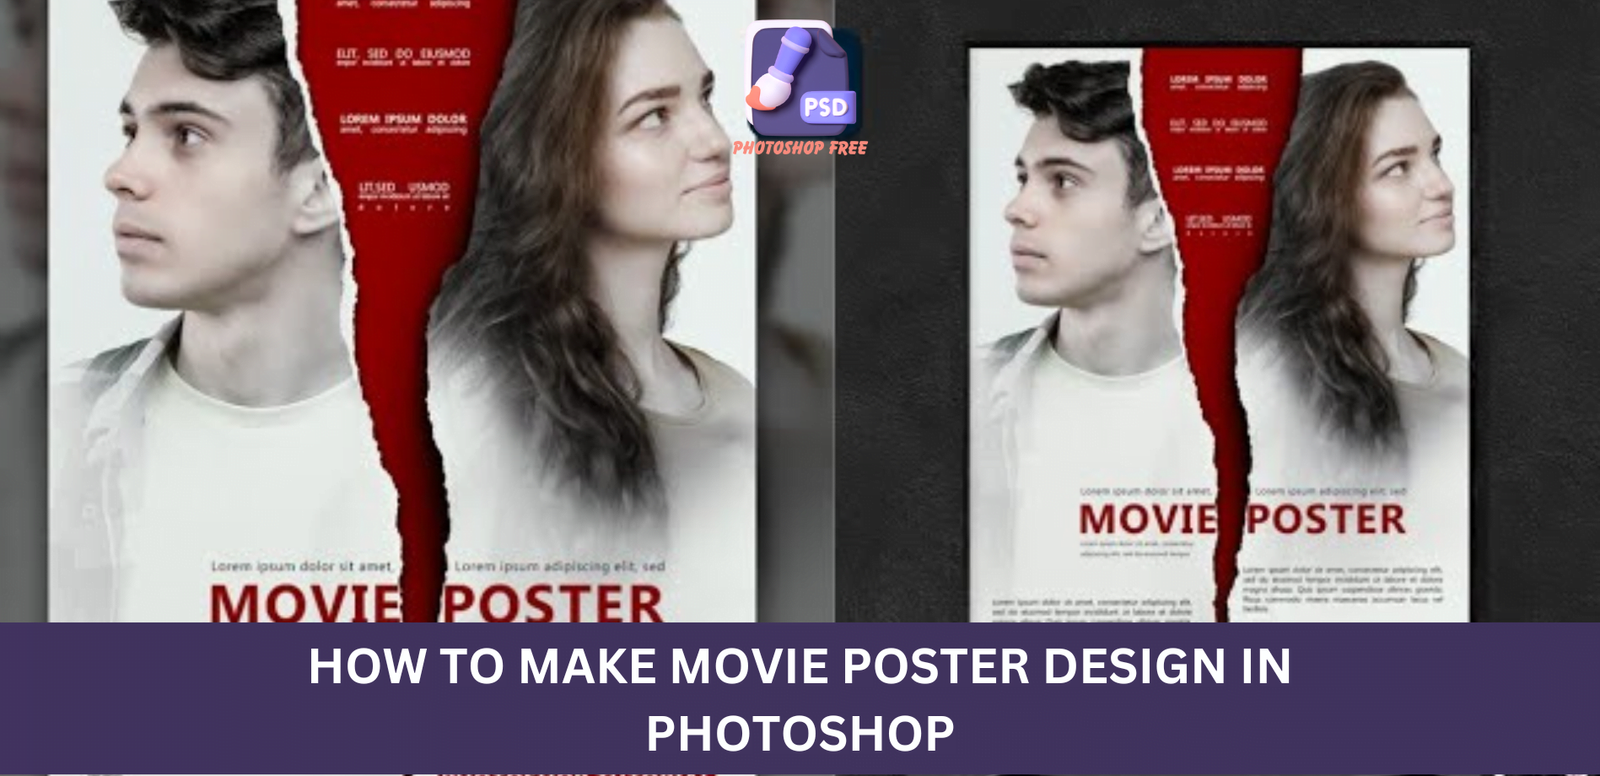 Movie Poster Design in Photoshop